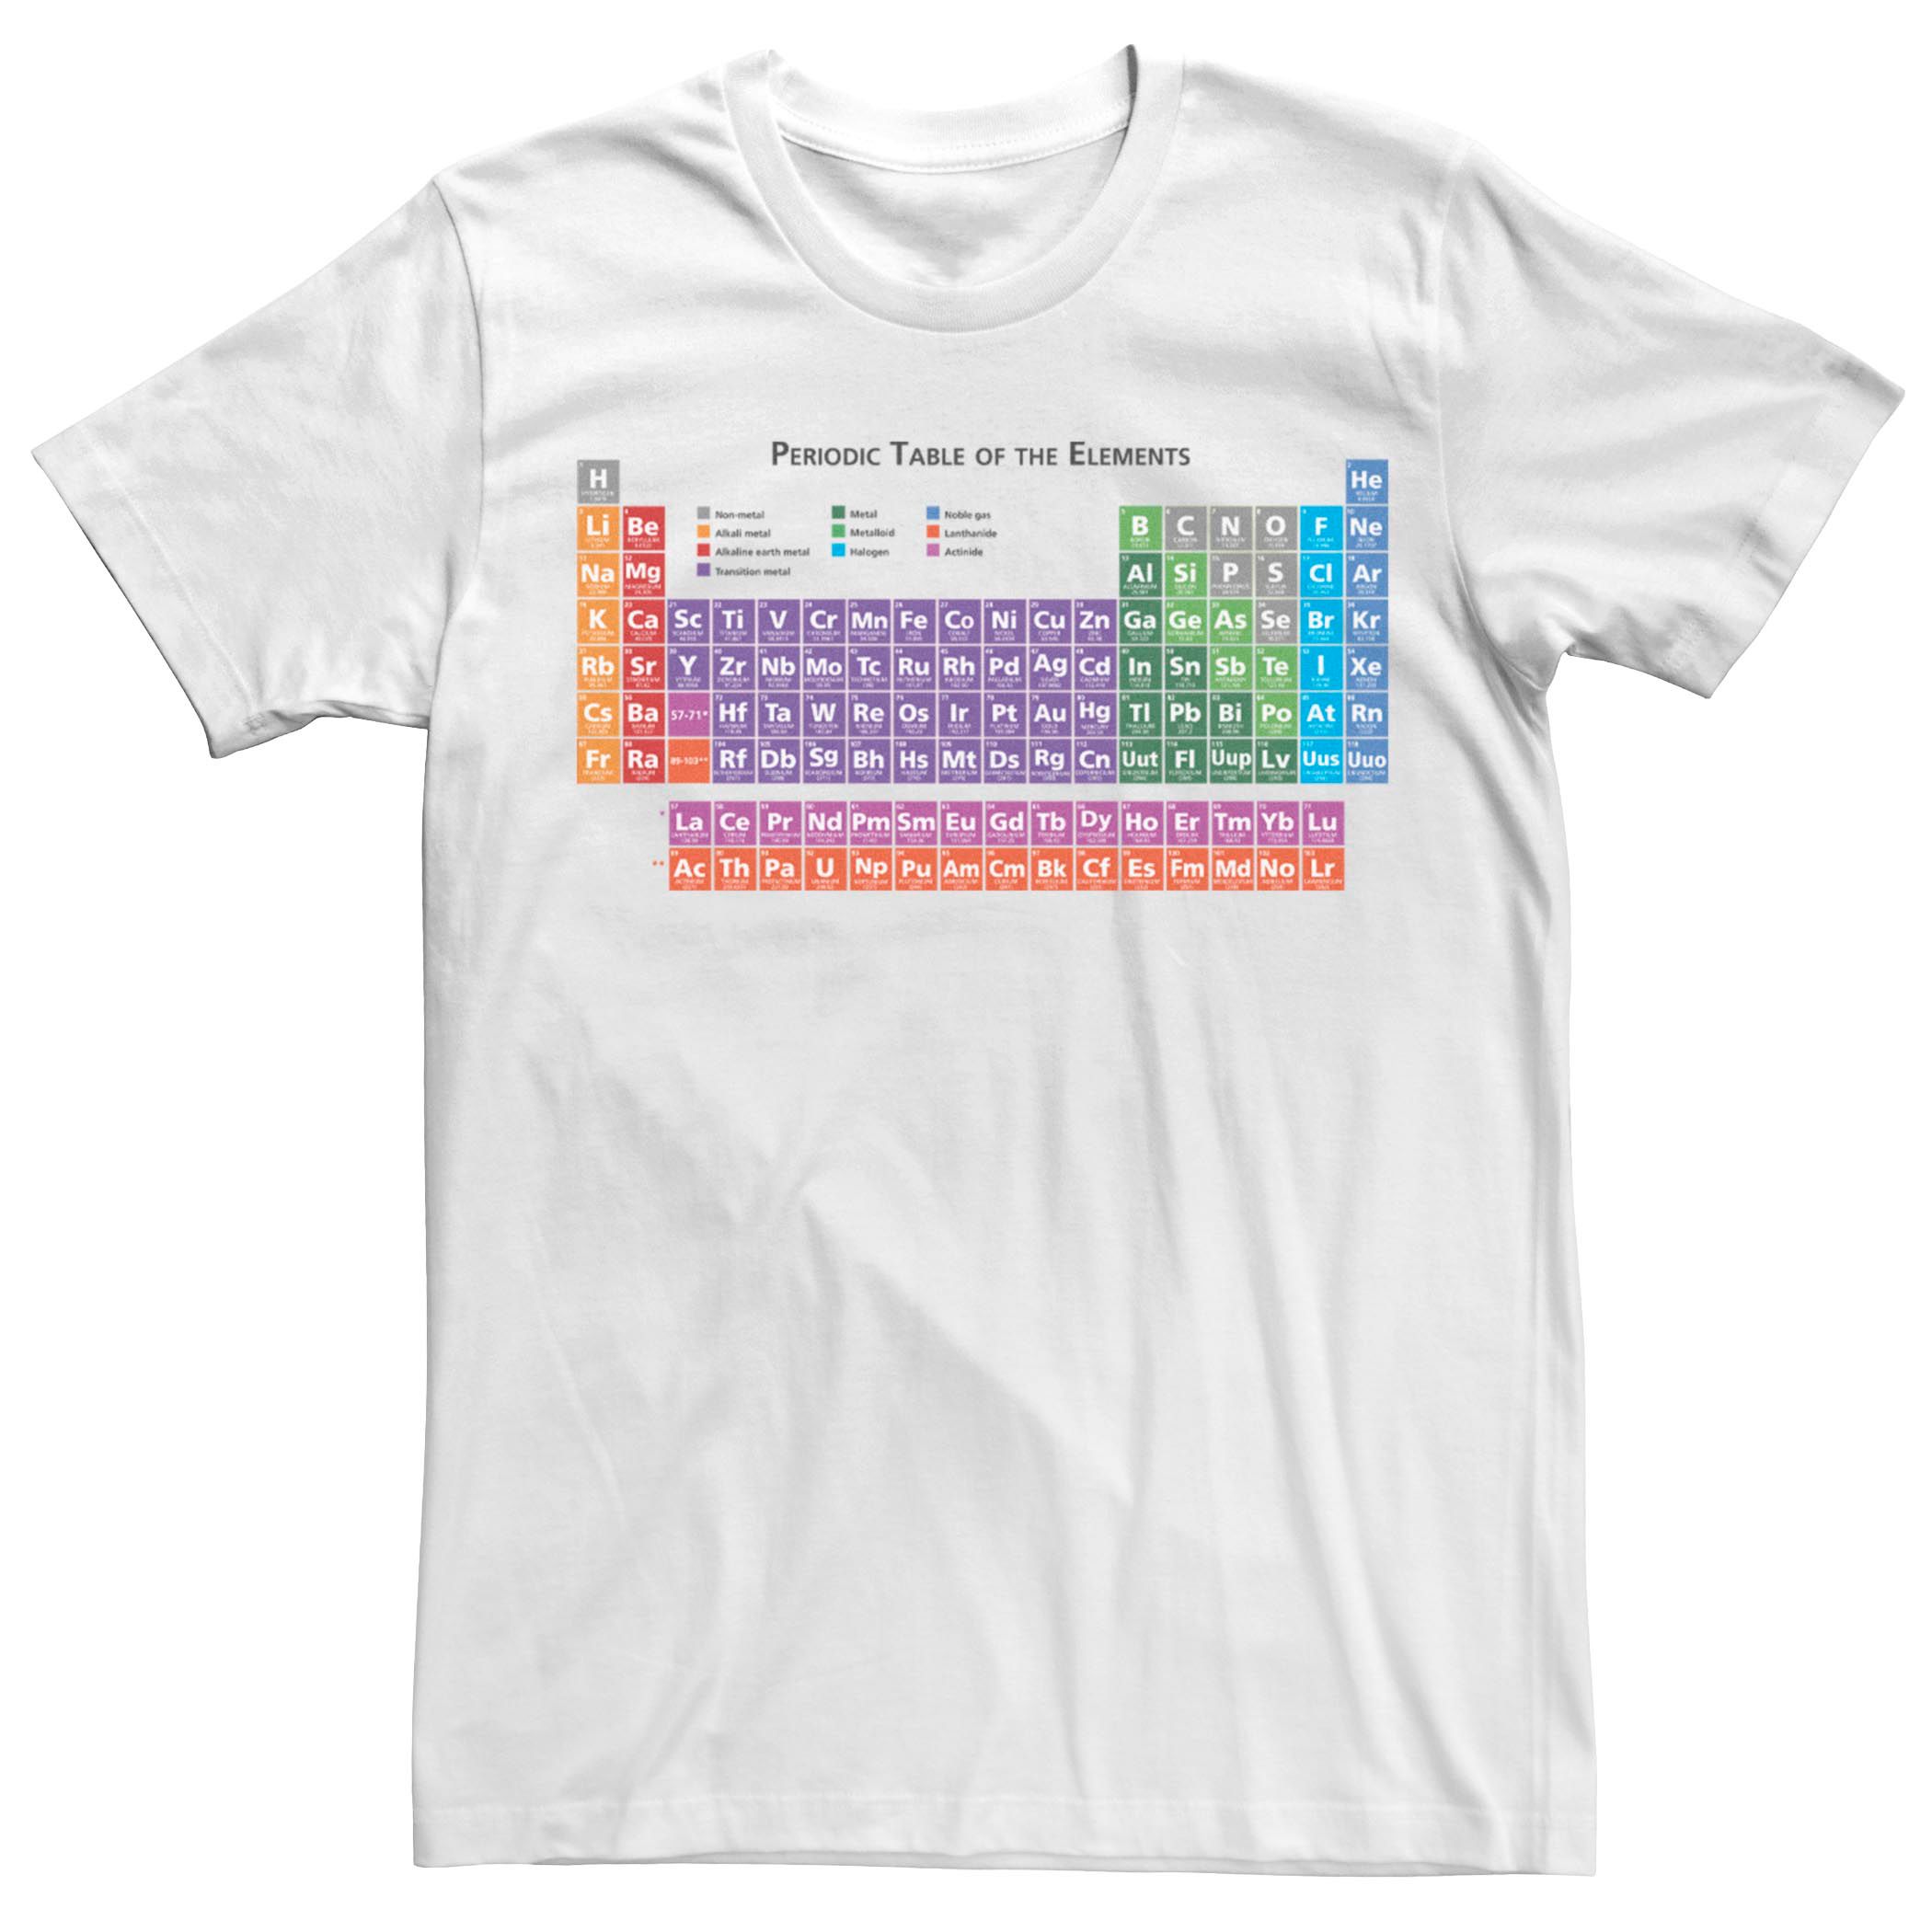 тетрадь rex a5 с периодической таблицей Мужская футболка с периодической таблицей элементов Fifth Sun